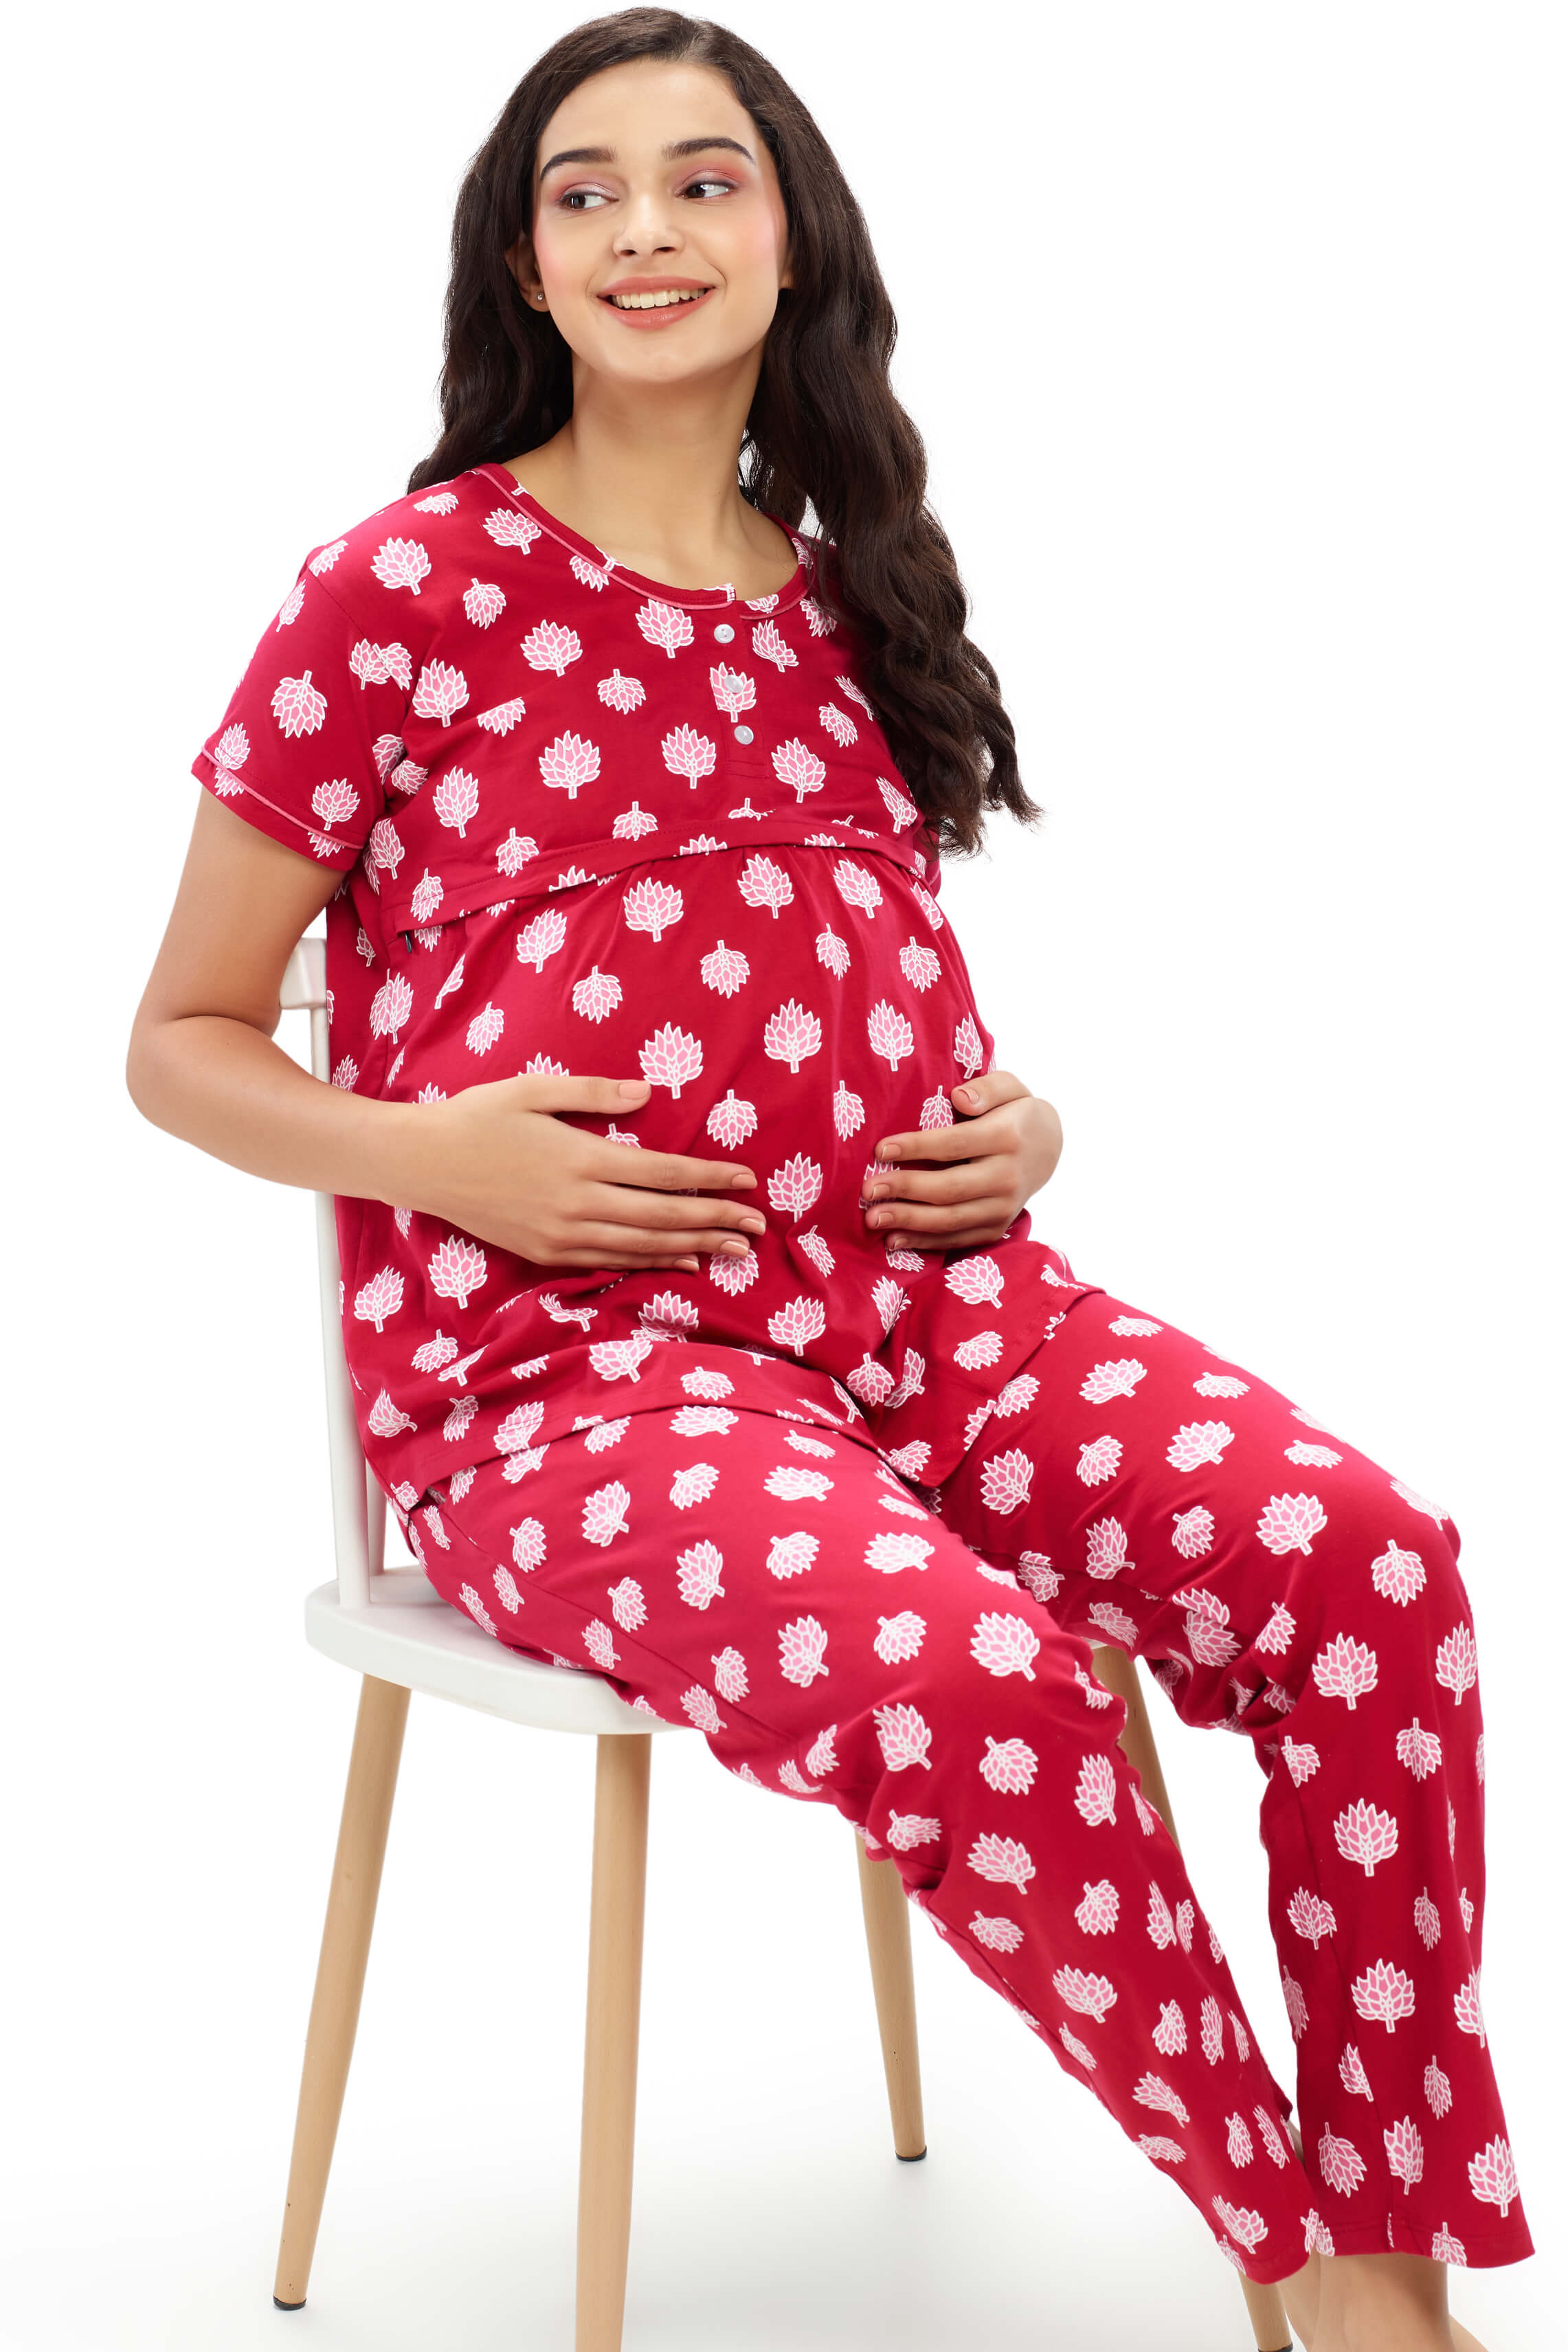 Maternity Clothes Breastfeeding Nightgowns Nursing Sleepwear Hospital Robe  Nightwear Breast Feeding Pajamas Pregnancy Dresses